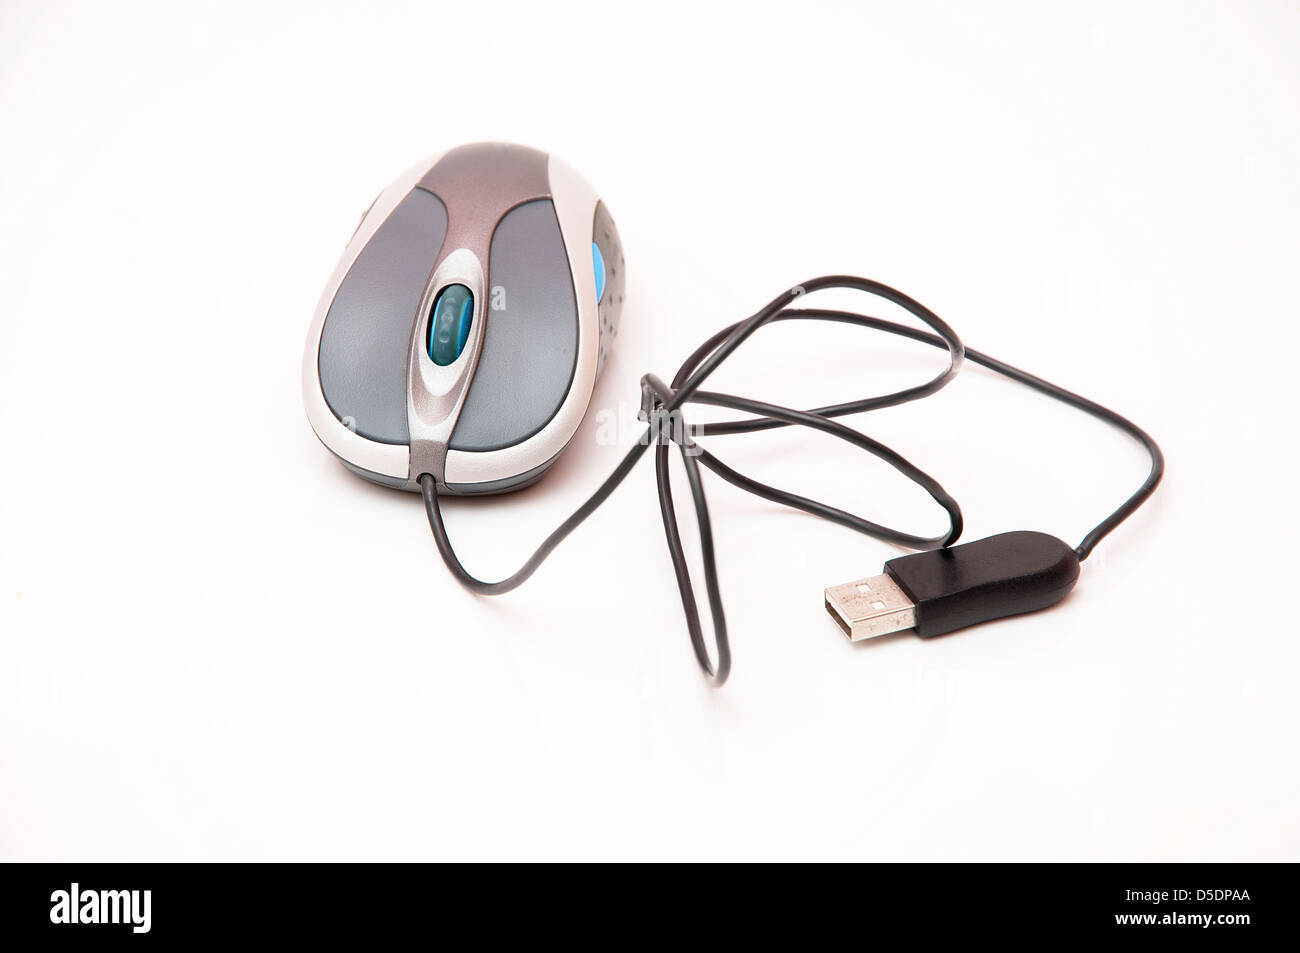 Il mouse del computer per gestire bene i tuoi processi Foto Stock